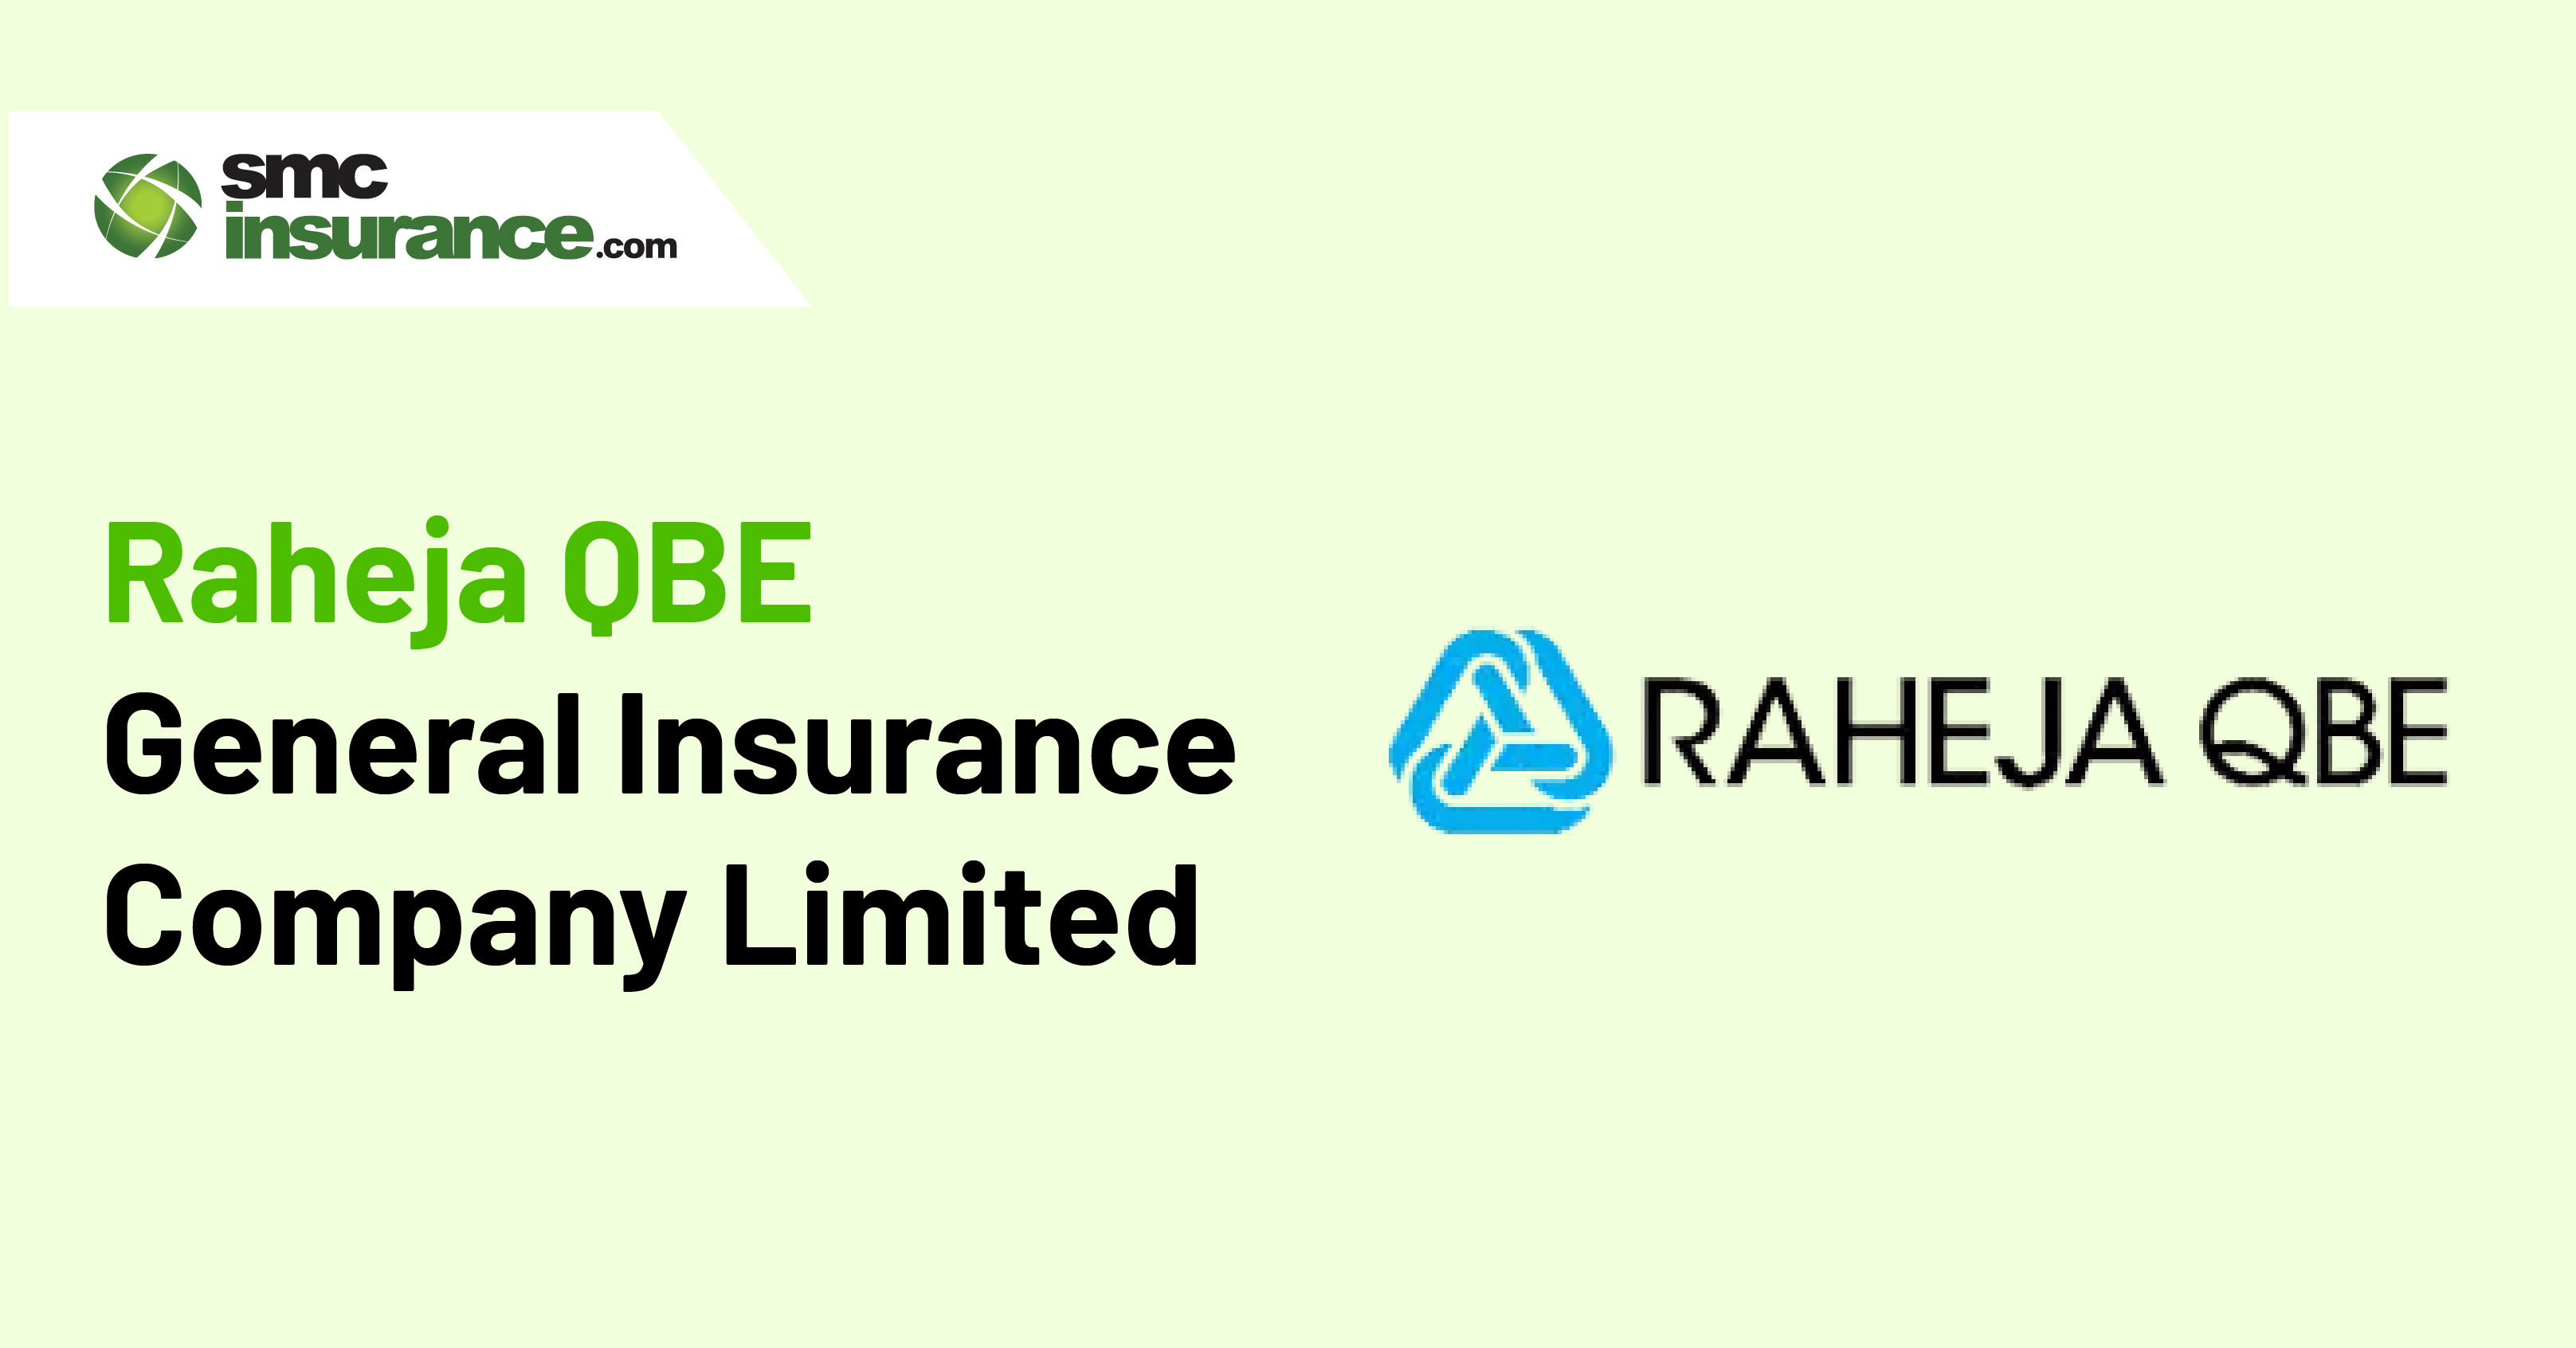 Raheja QBE General Insurance Company Limited